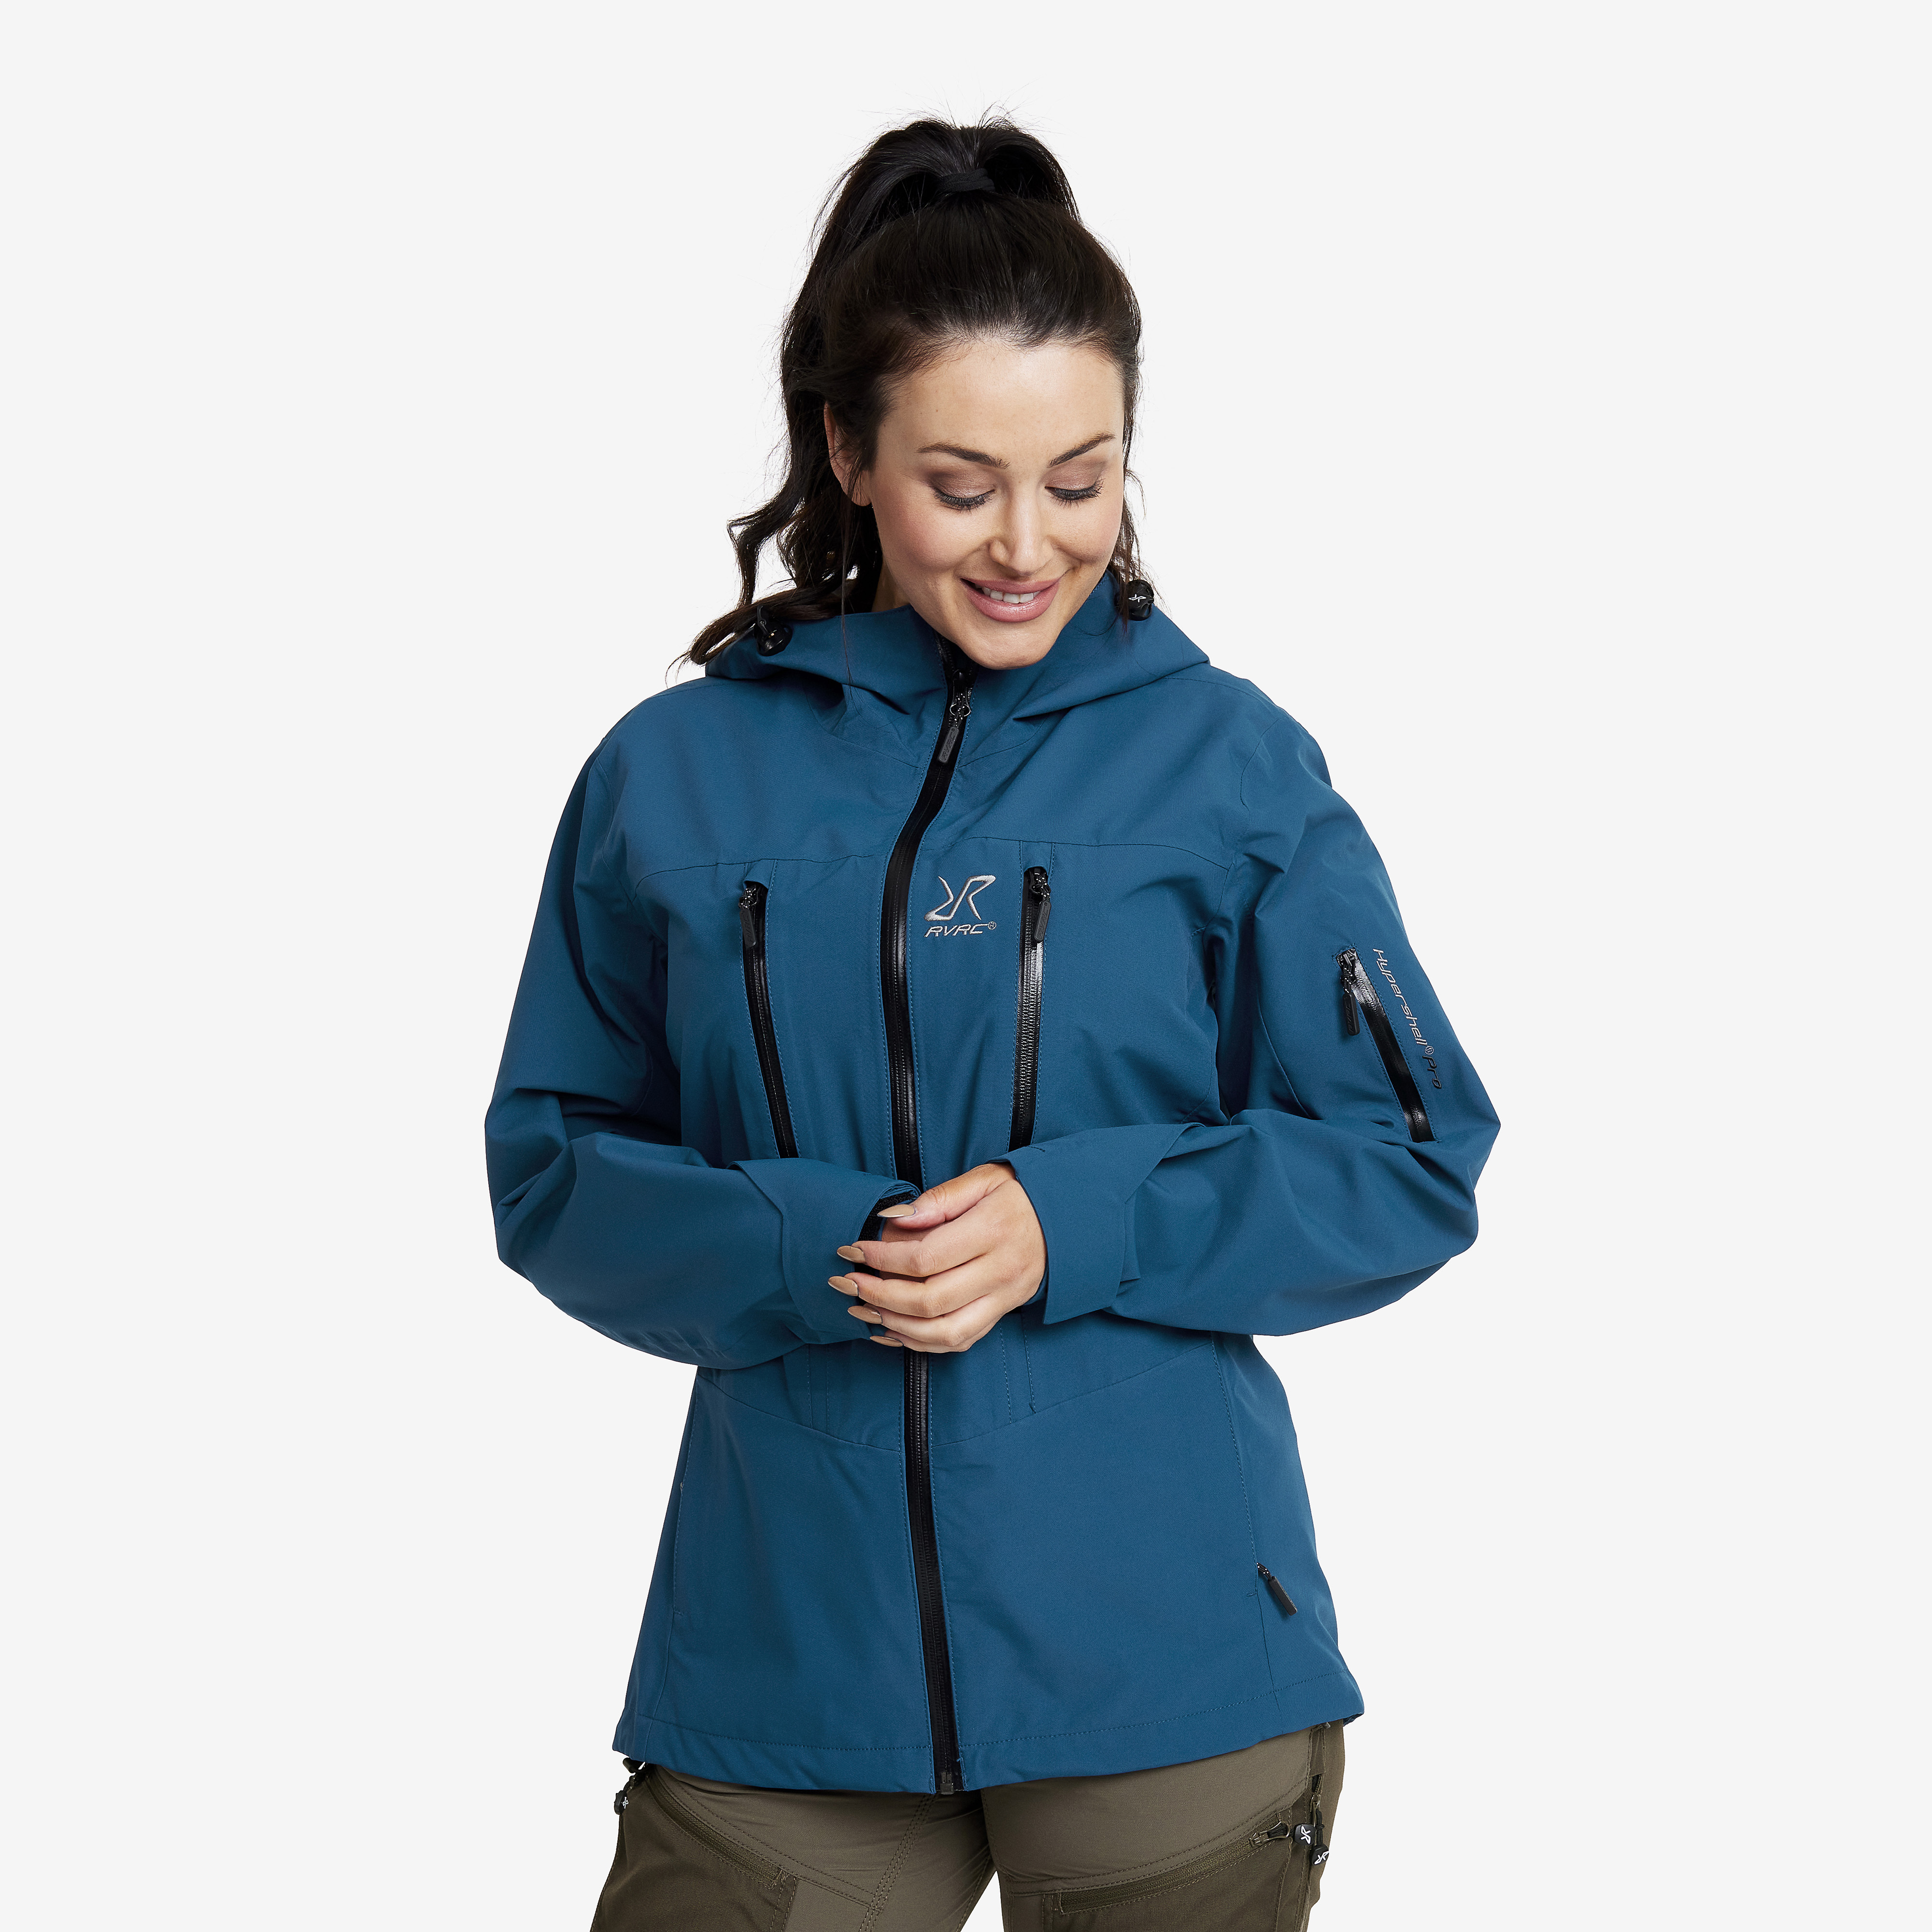 Whisper waterproof jacket for women in blue